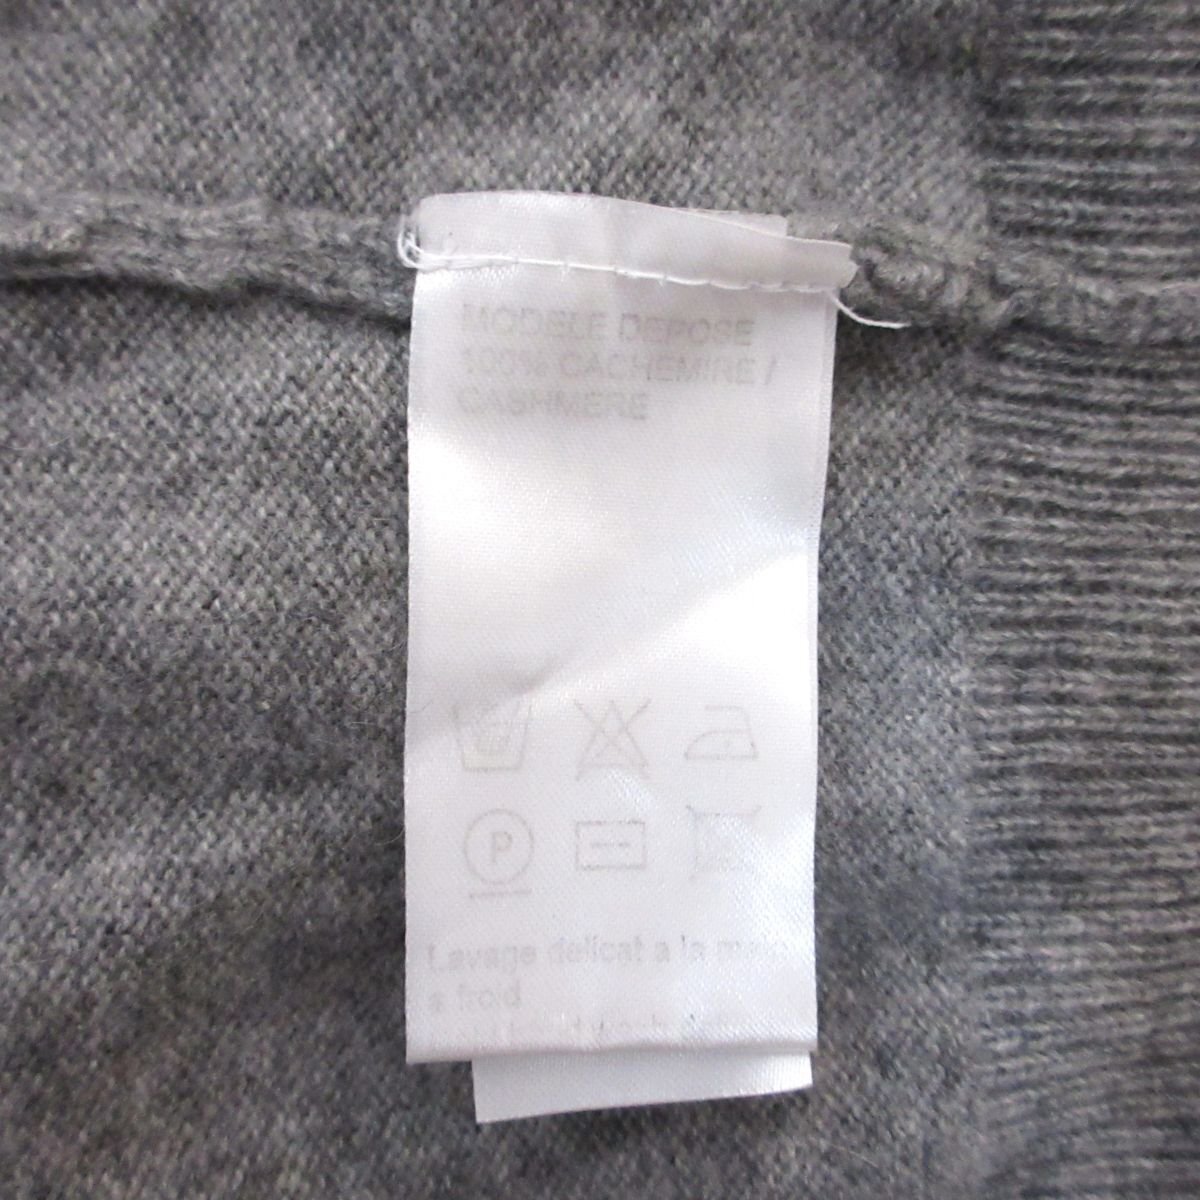  beautiful goods PAULE KA paul (pole) ka cashmere 100% knitted cardigan S size gray *